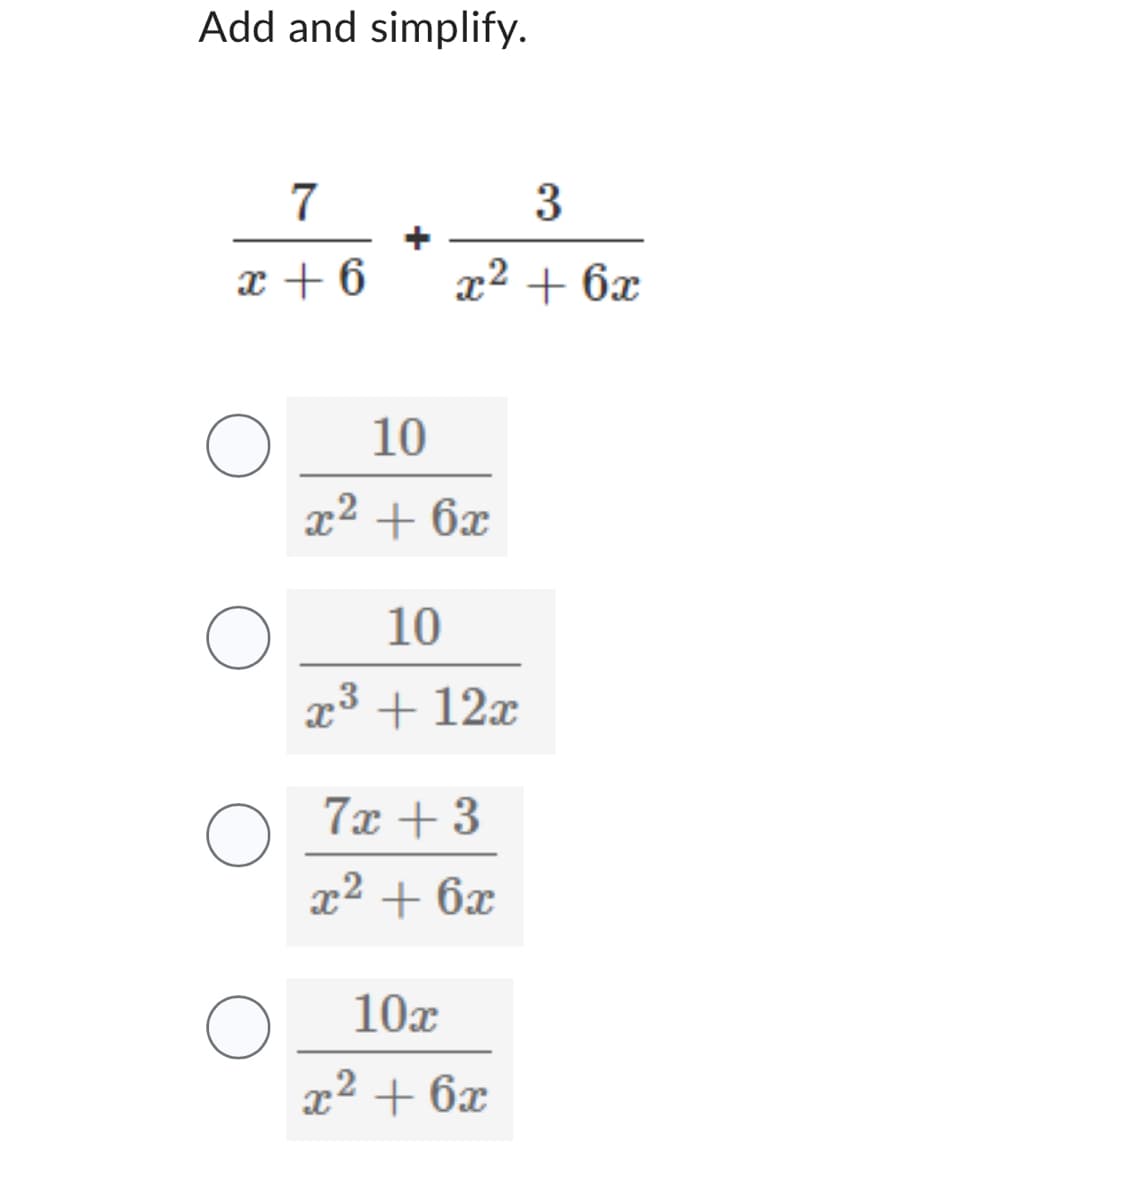 Add and simplify.
7
x + 6
O
O
3
x² + 6x
10
x² + 6x
10
3
x³ + 12x
7x +3
x² + 6x
10x
x² +6x